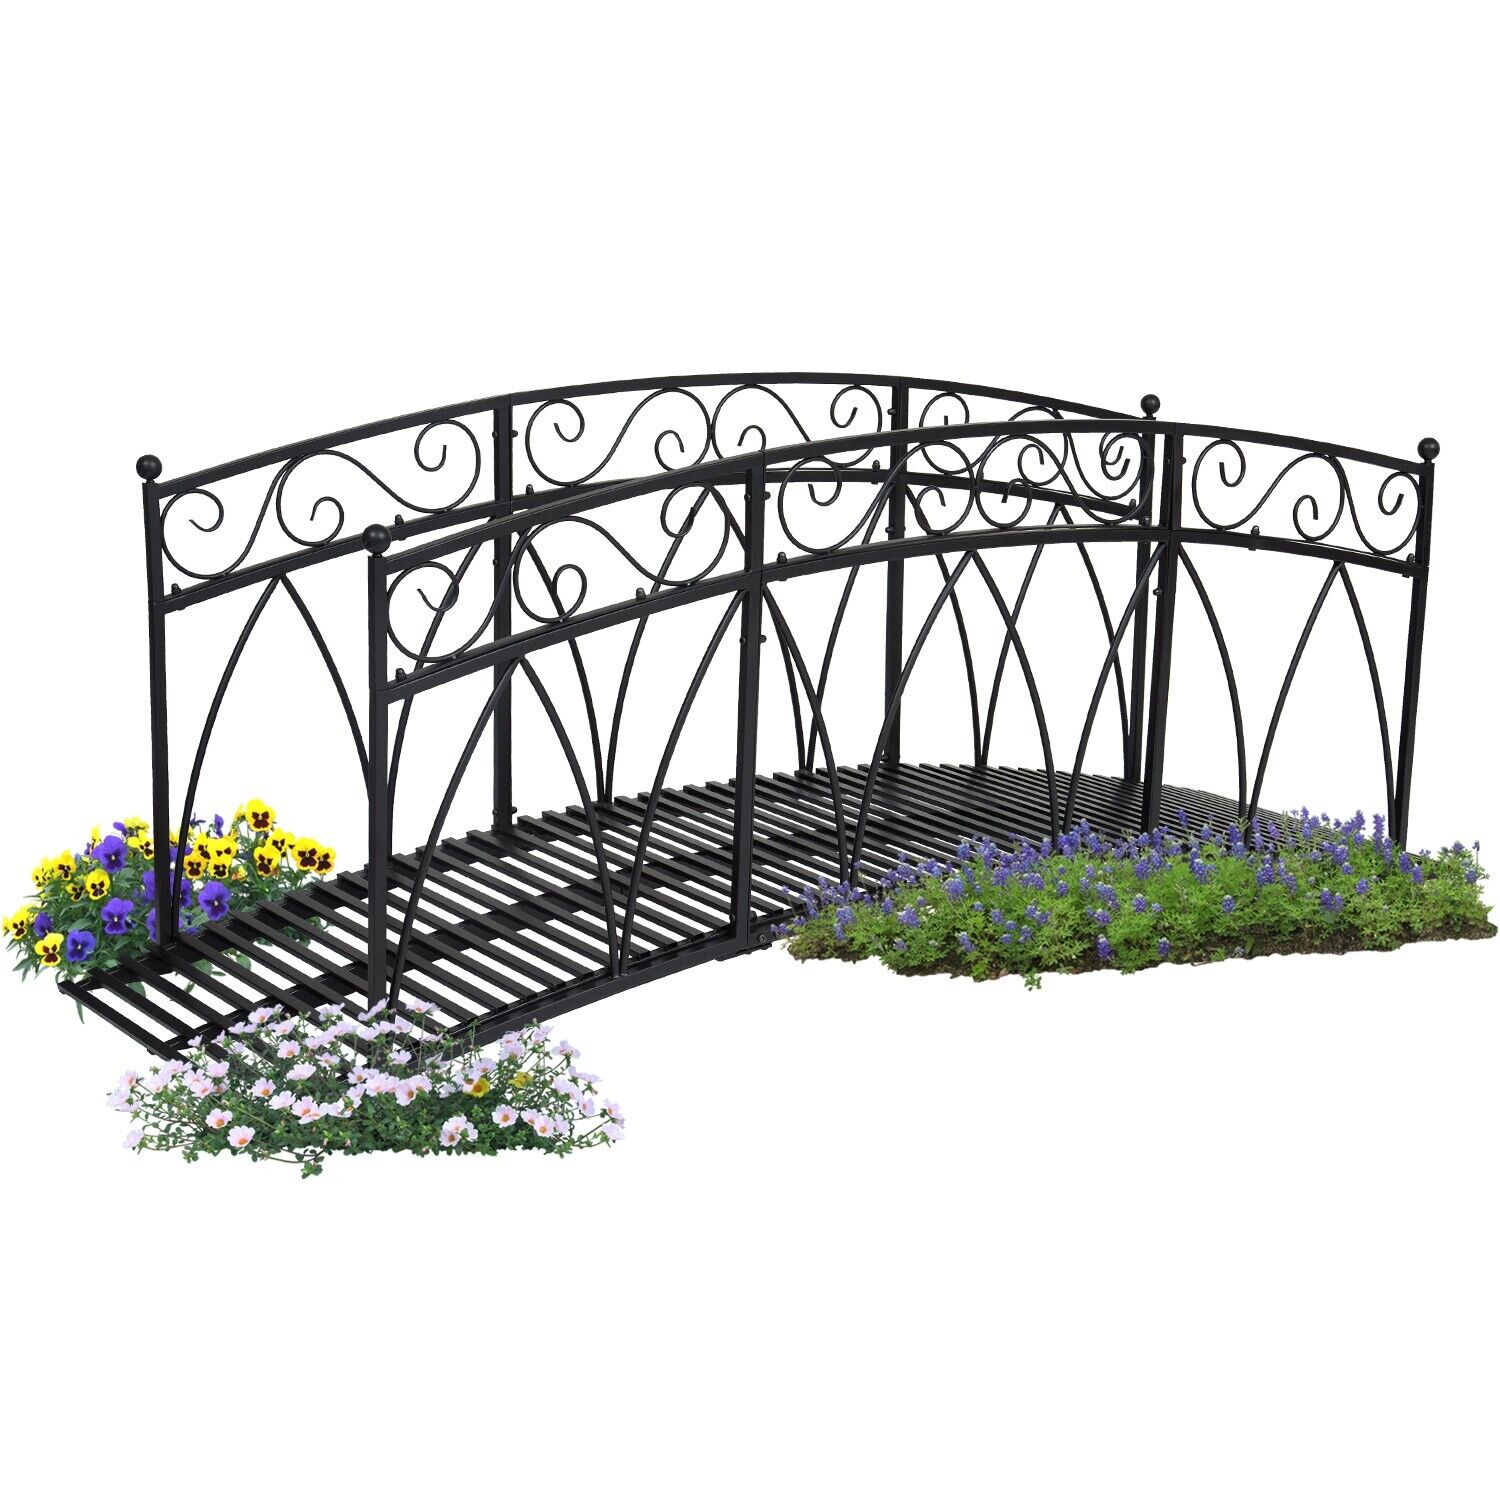 8 Ft Metal Garden Bridge Curved Outdoor Decorative Pond Bridge W/ Safety Rails